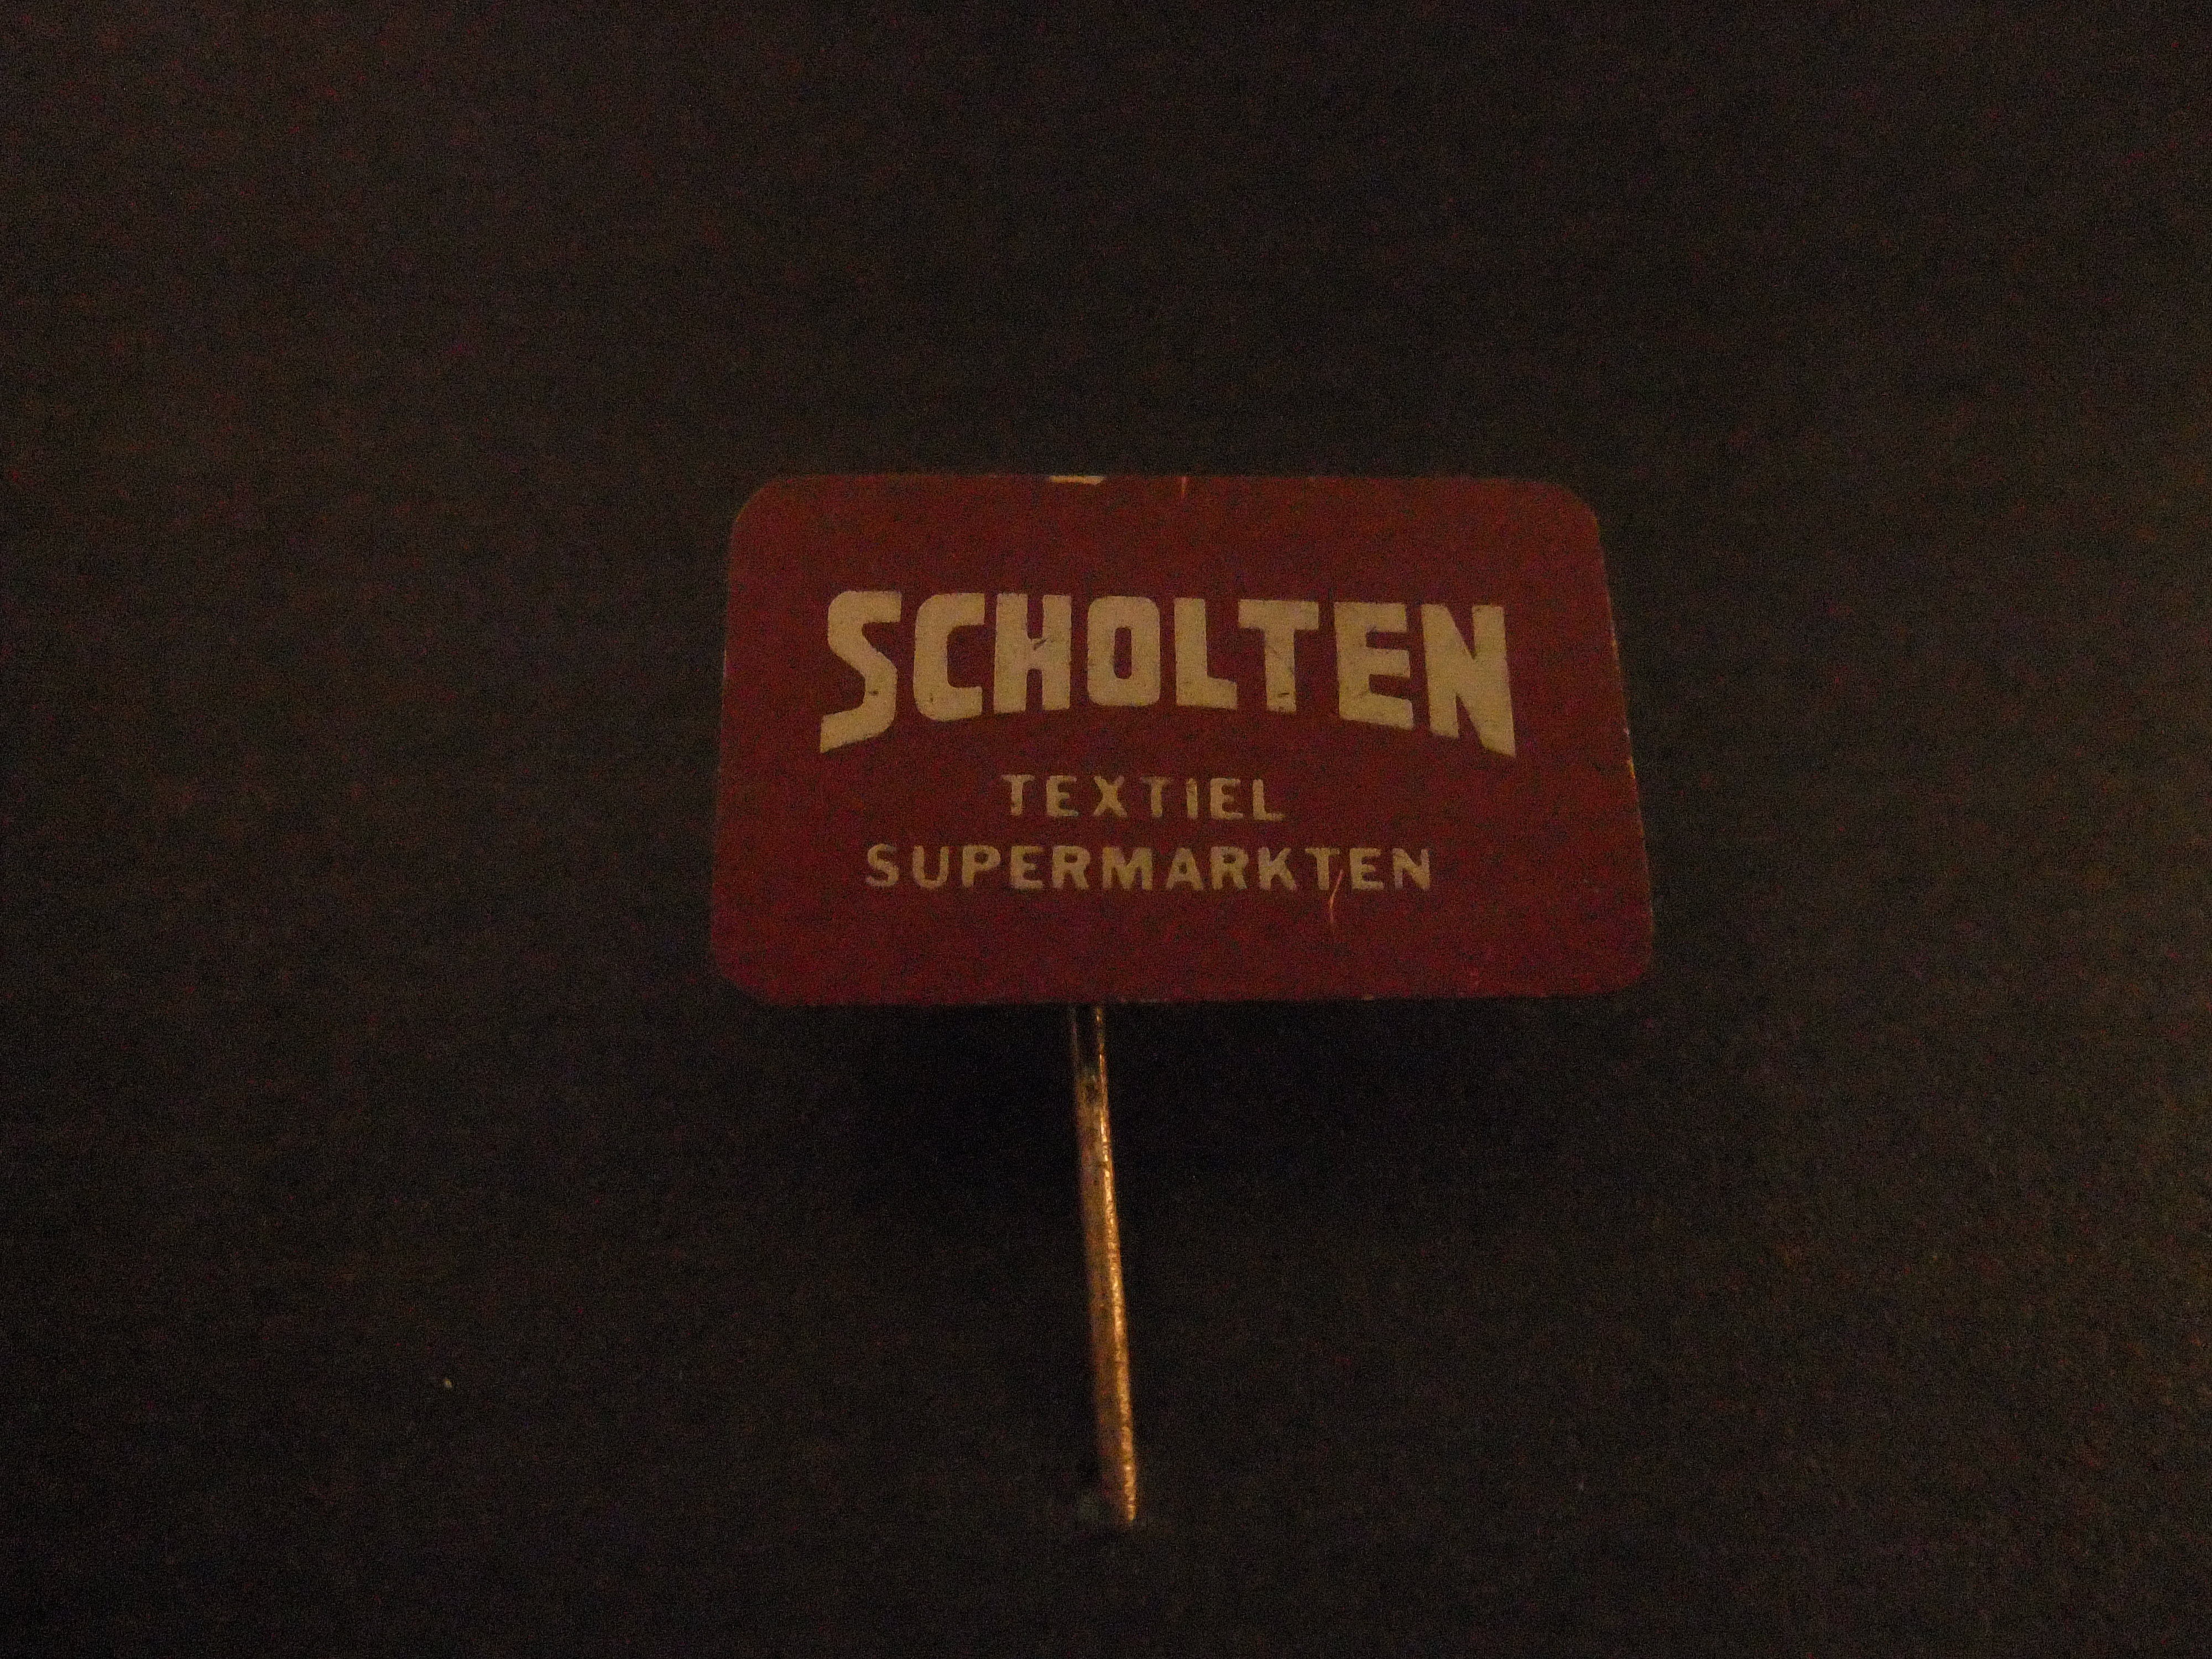 Scholten textielfabriek ( supermarkt) jaren 60  Enschede